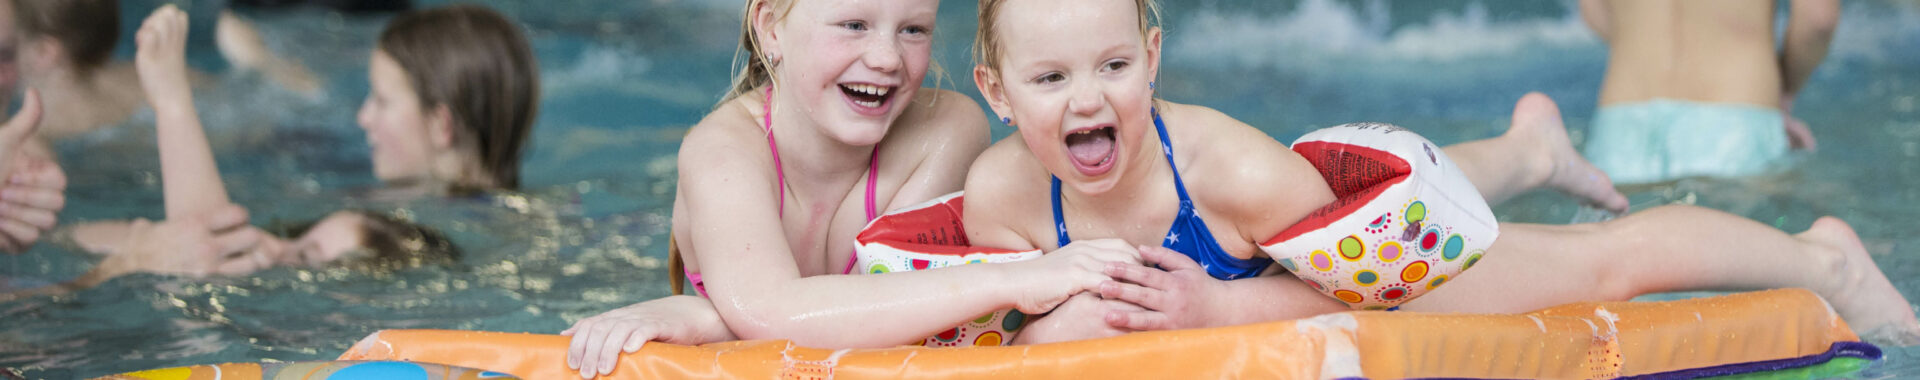 Kinderfeestje en feestarrangement in zwembad Hoornse Vaart in Alkmaar